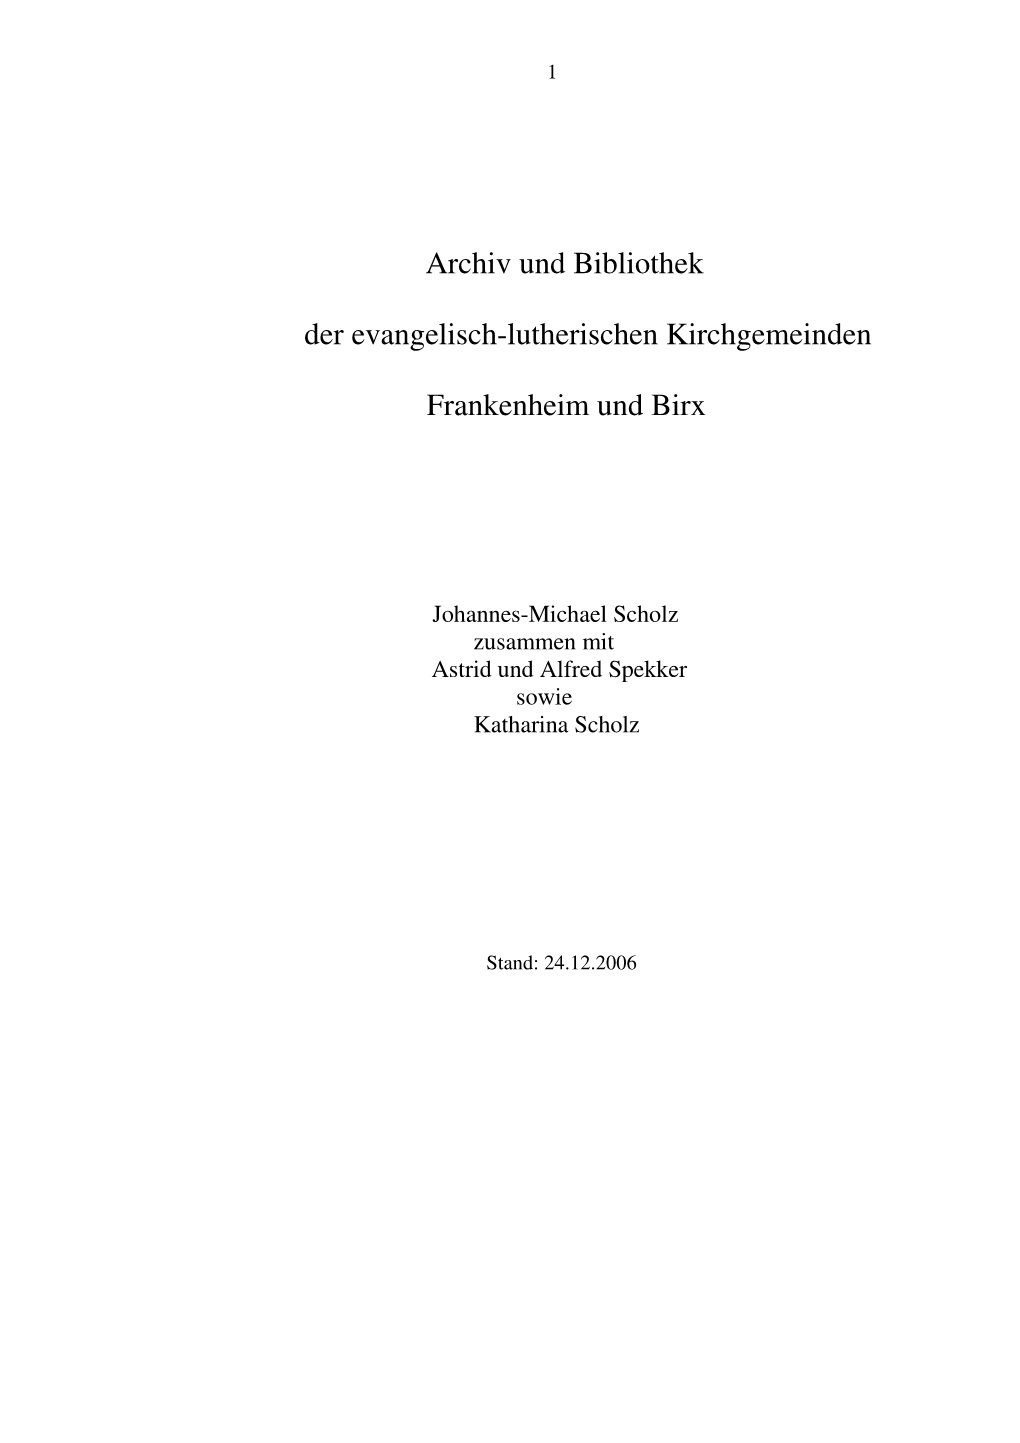 Teil IV Pfarrarchiv Und Bibliothek Frankenheim Und Birx (Im Pfarramt)